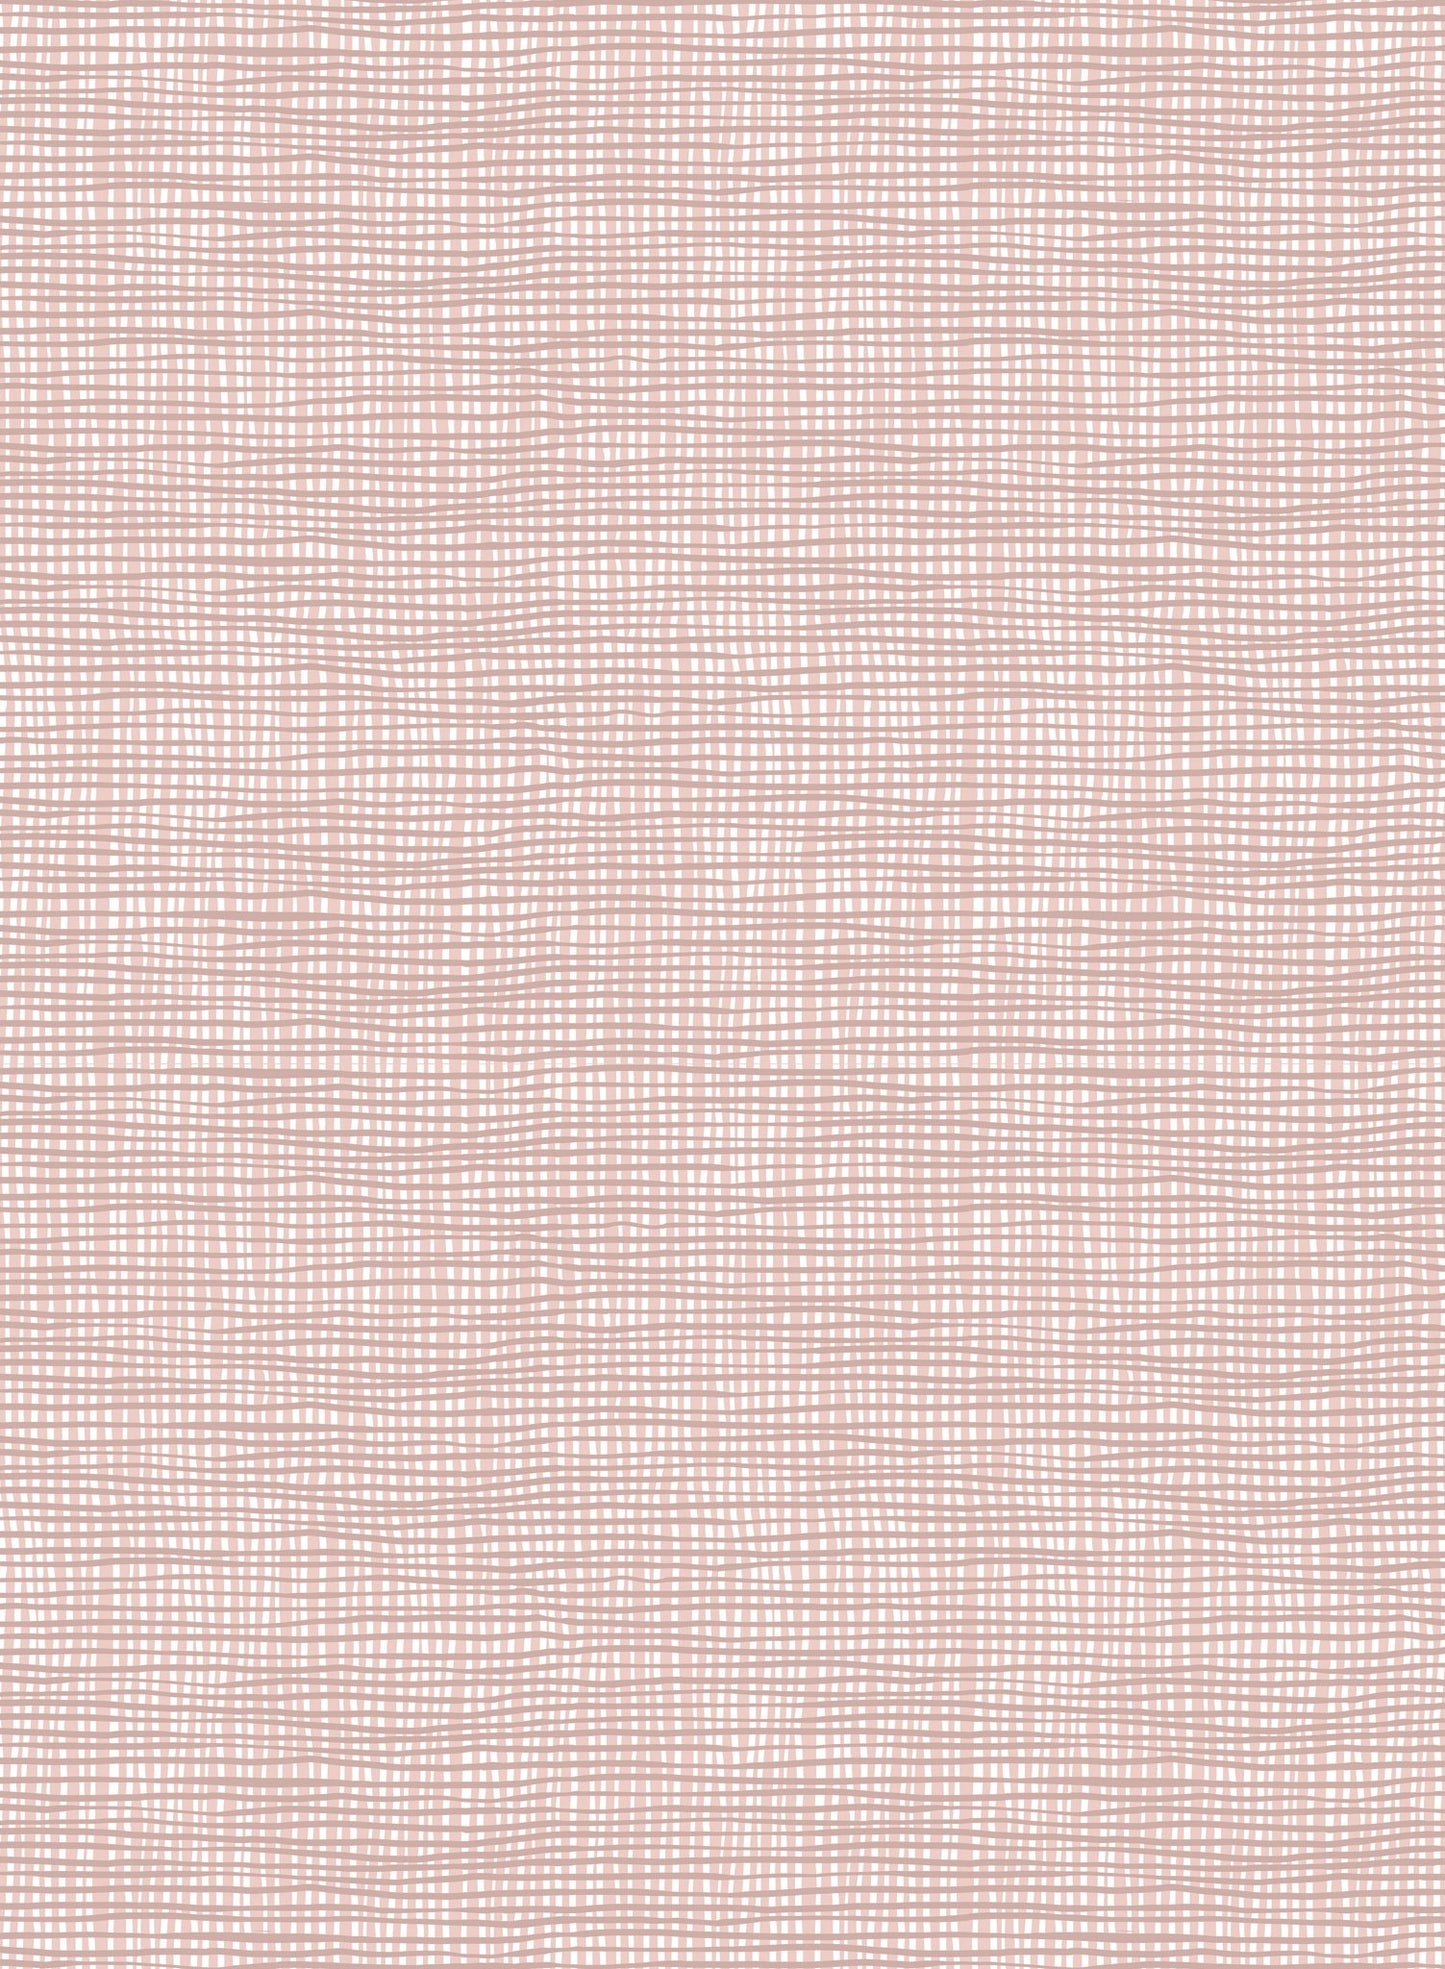 Linen, Wallpaper